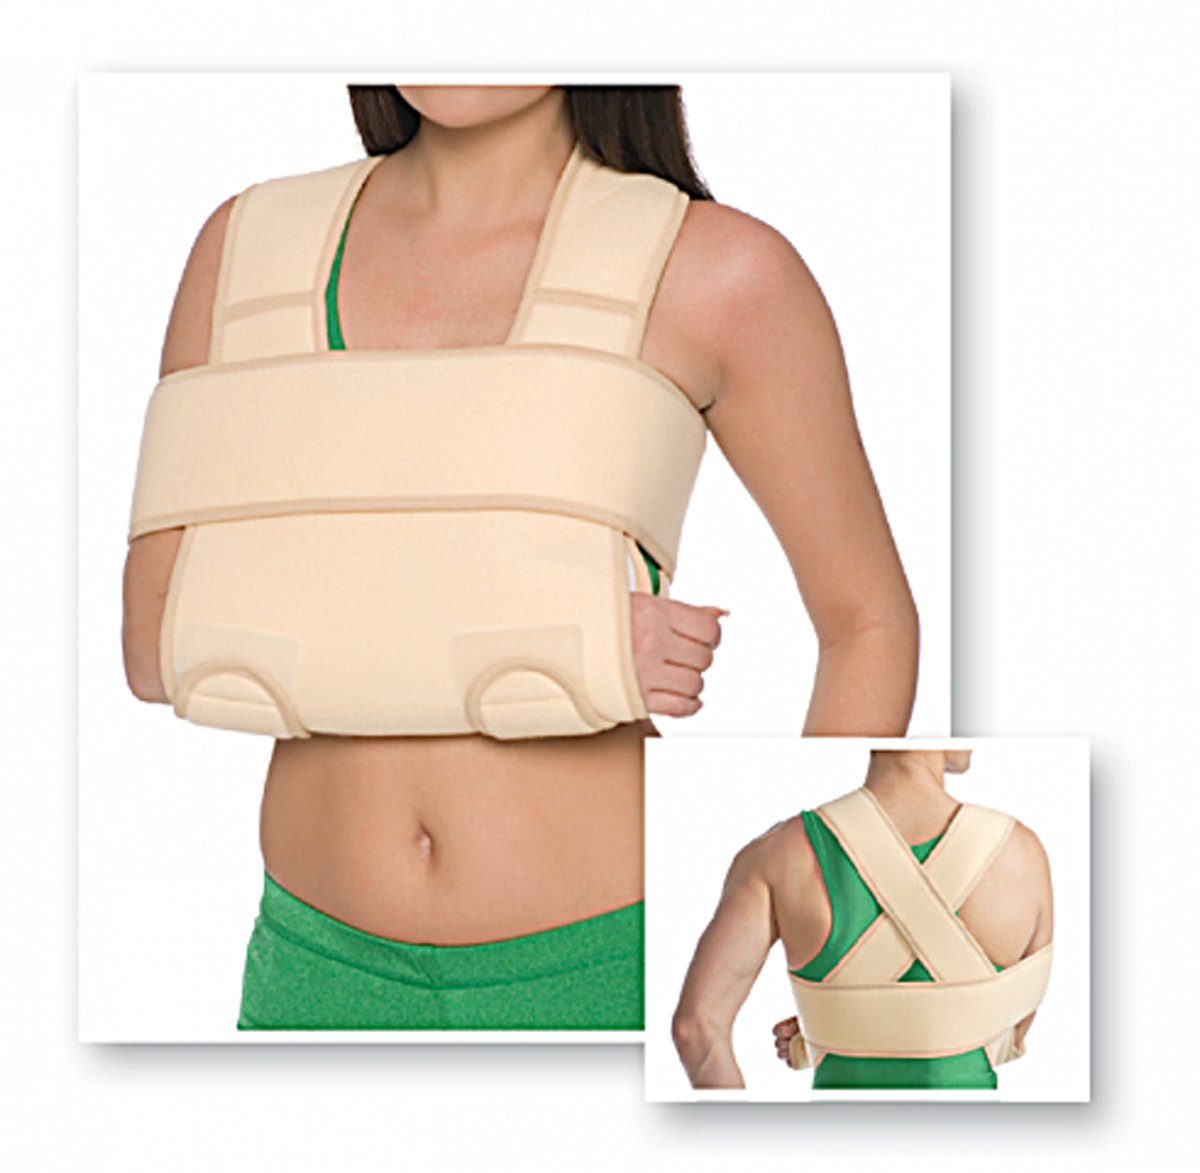 MedTex Armbandage Armgelenkbandage Armschlinge Schulter-Arm-Bandage  verstärkt Hand-Gelenk 8013, Fixierung